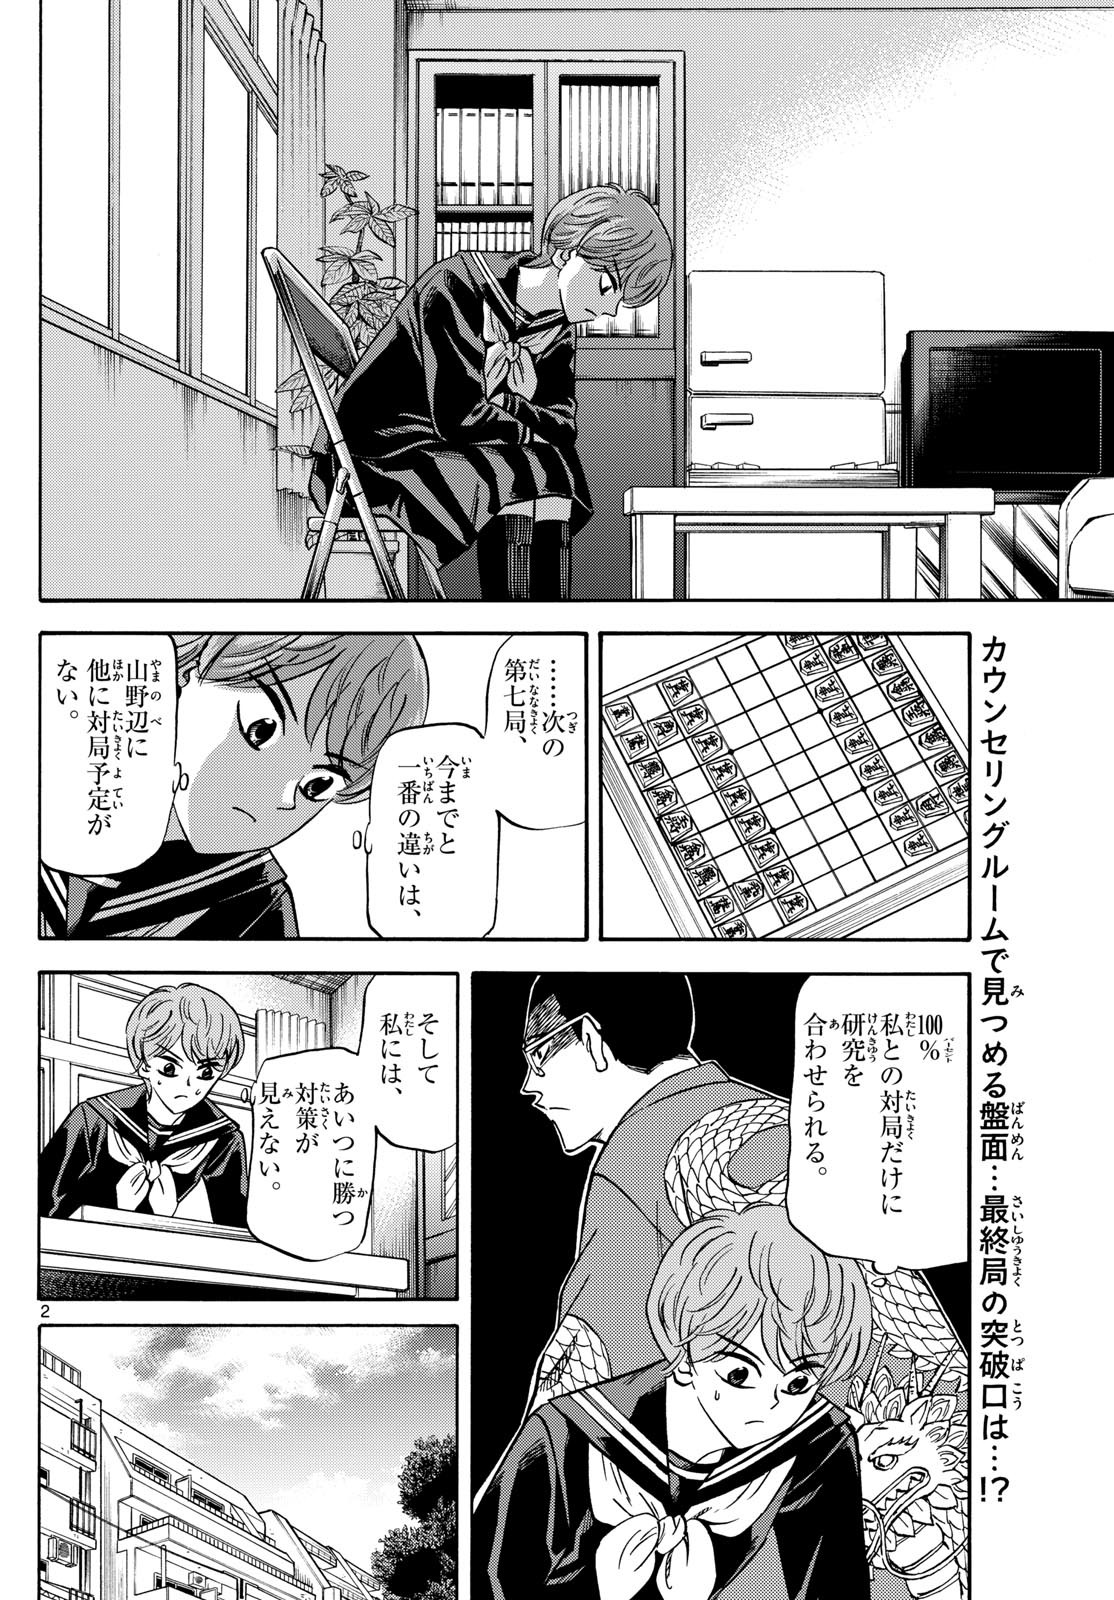 Ryu-to-Ichigo - Chapter 172 - Page 2